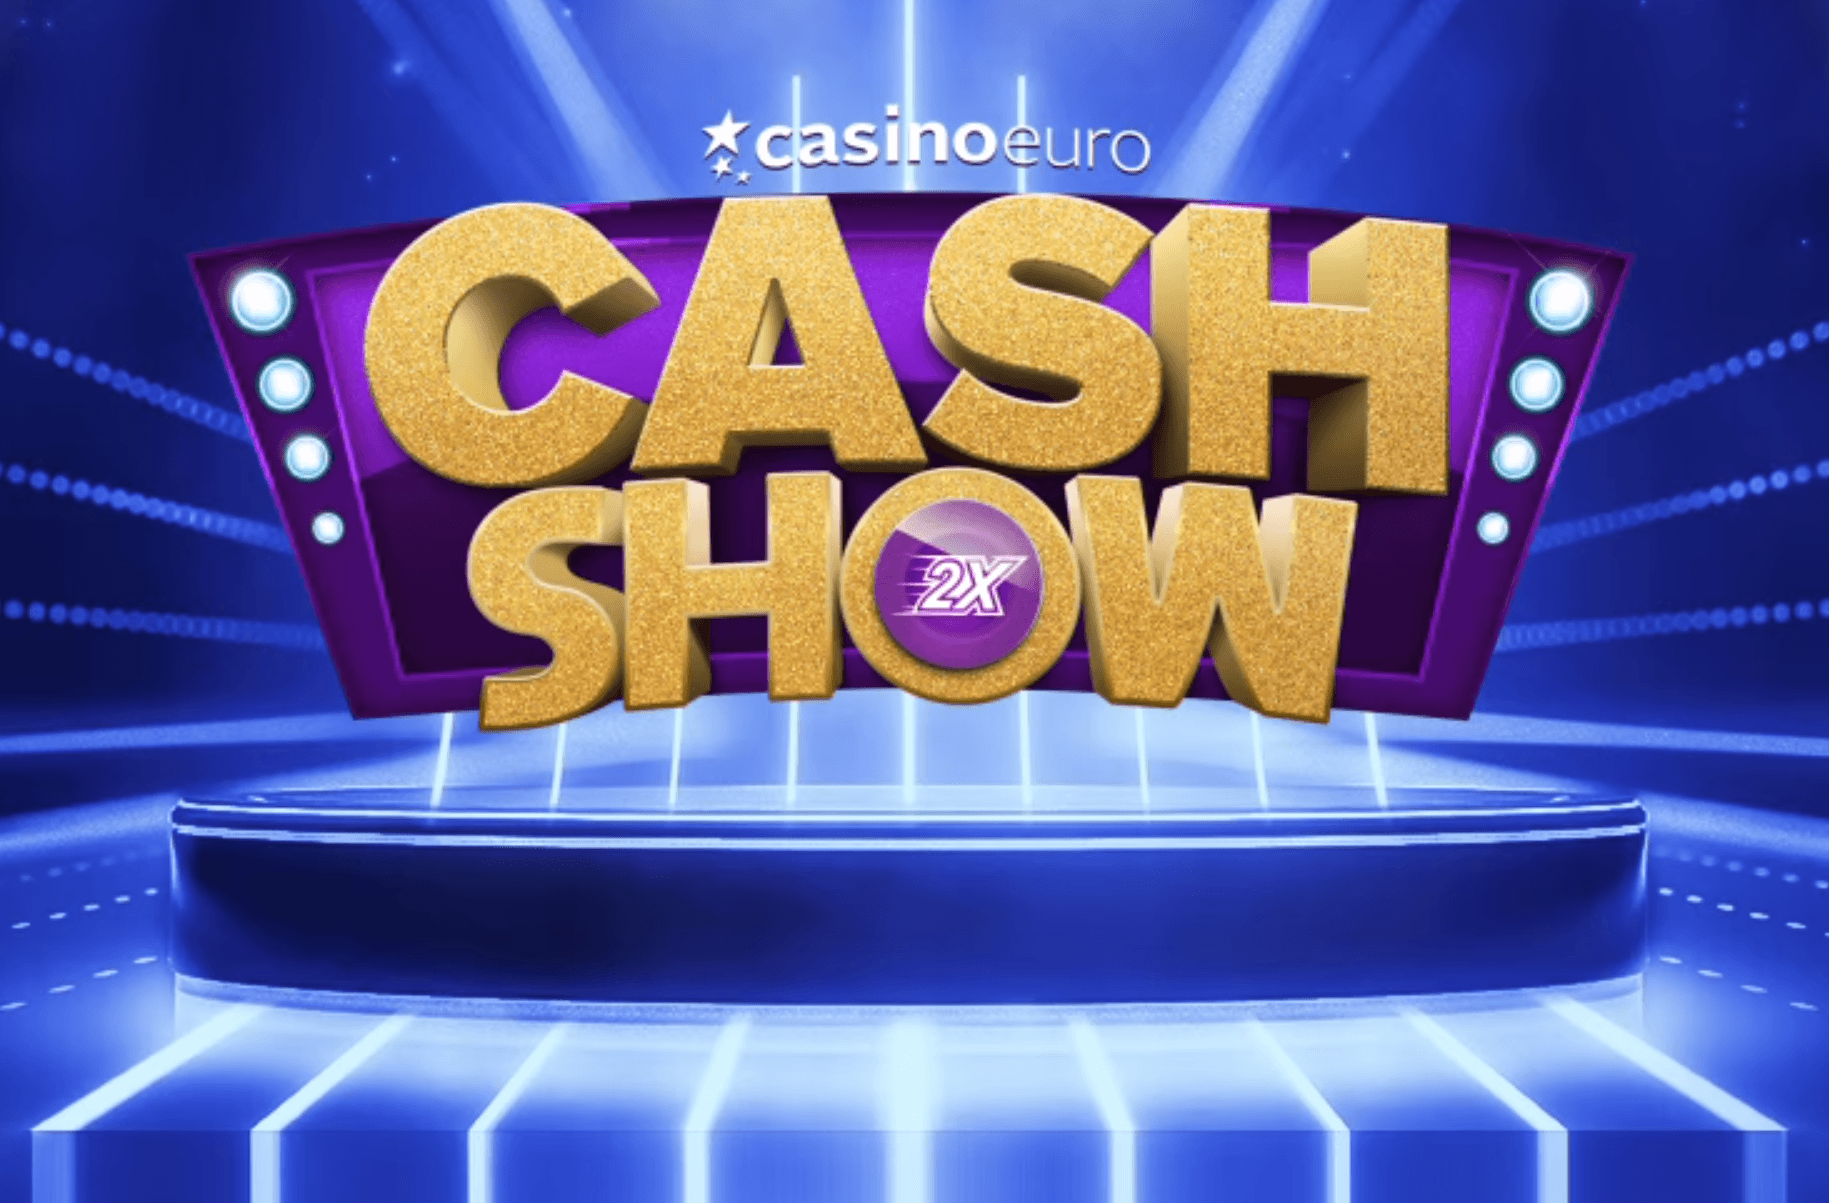 CasinoEuro Cash Show